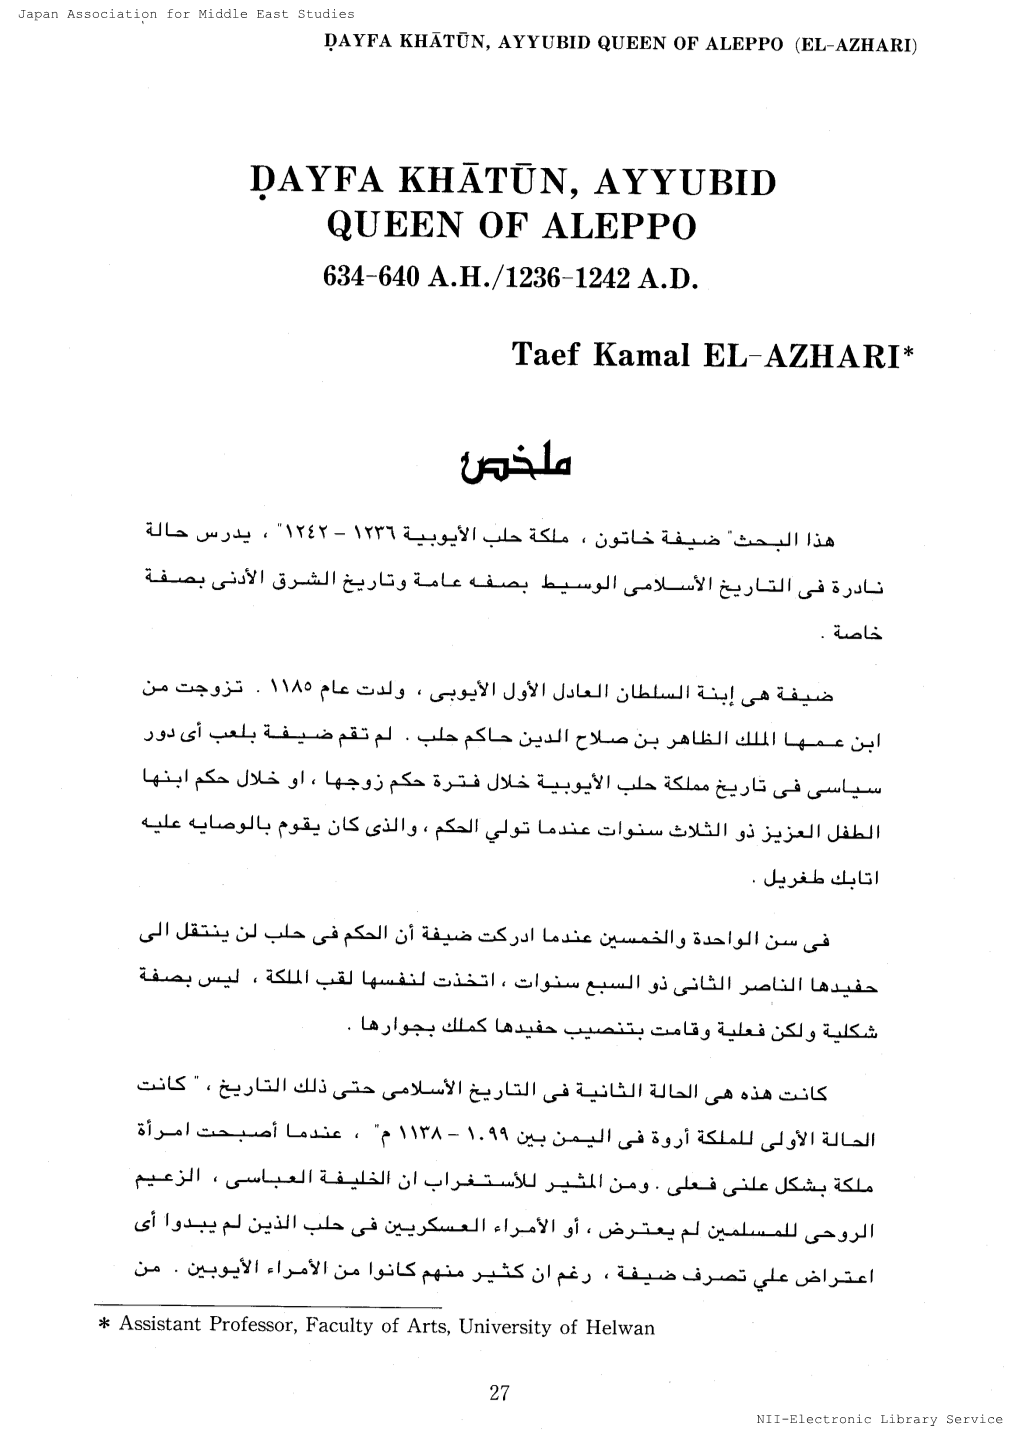 Queen of Aleppo(El-Azhari)